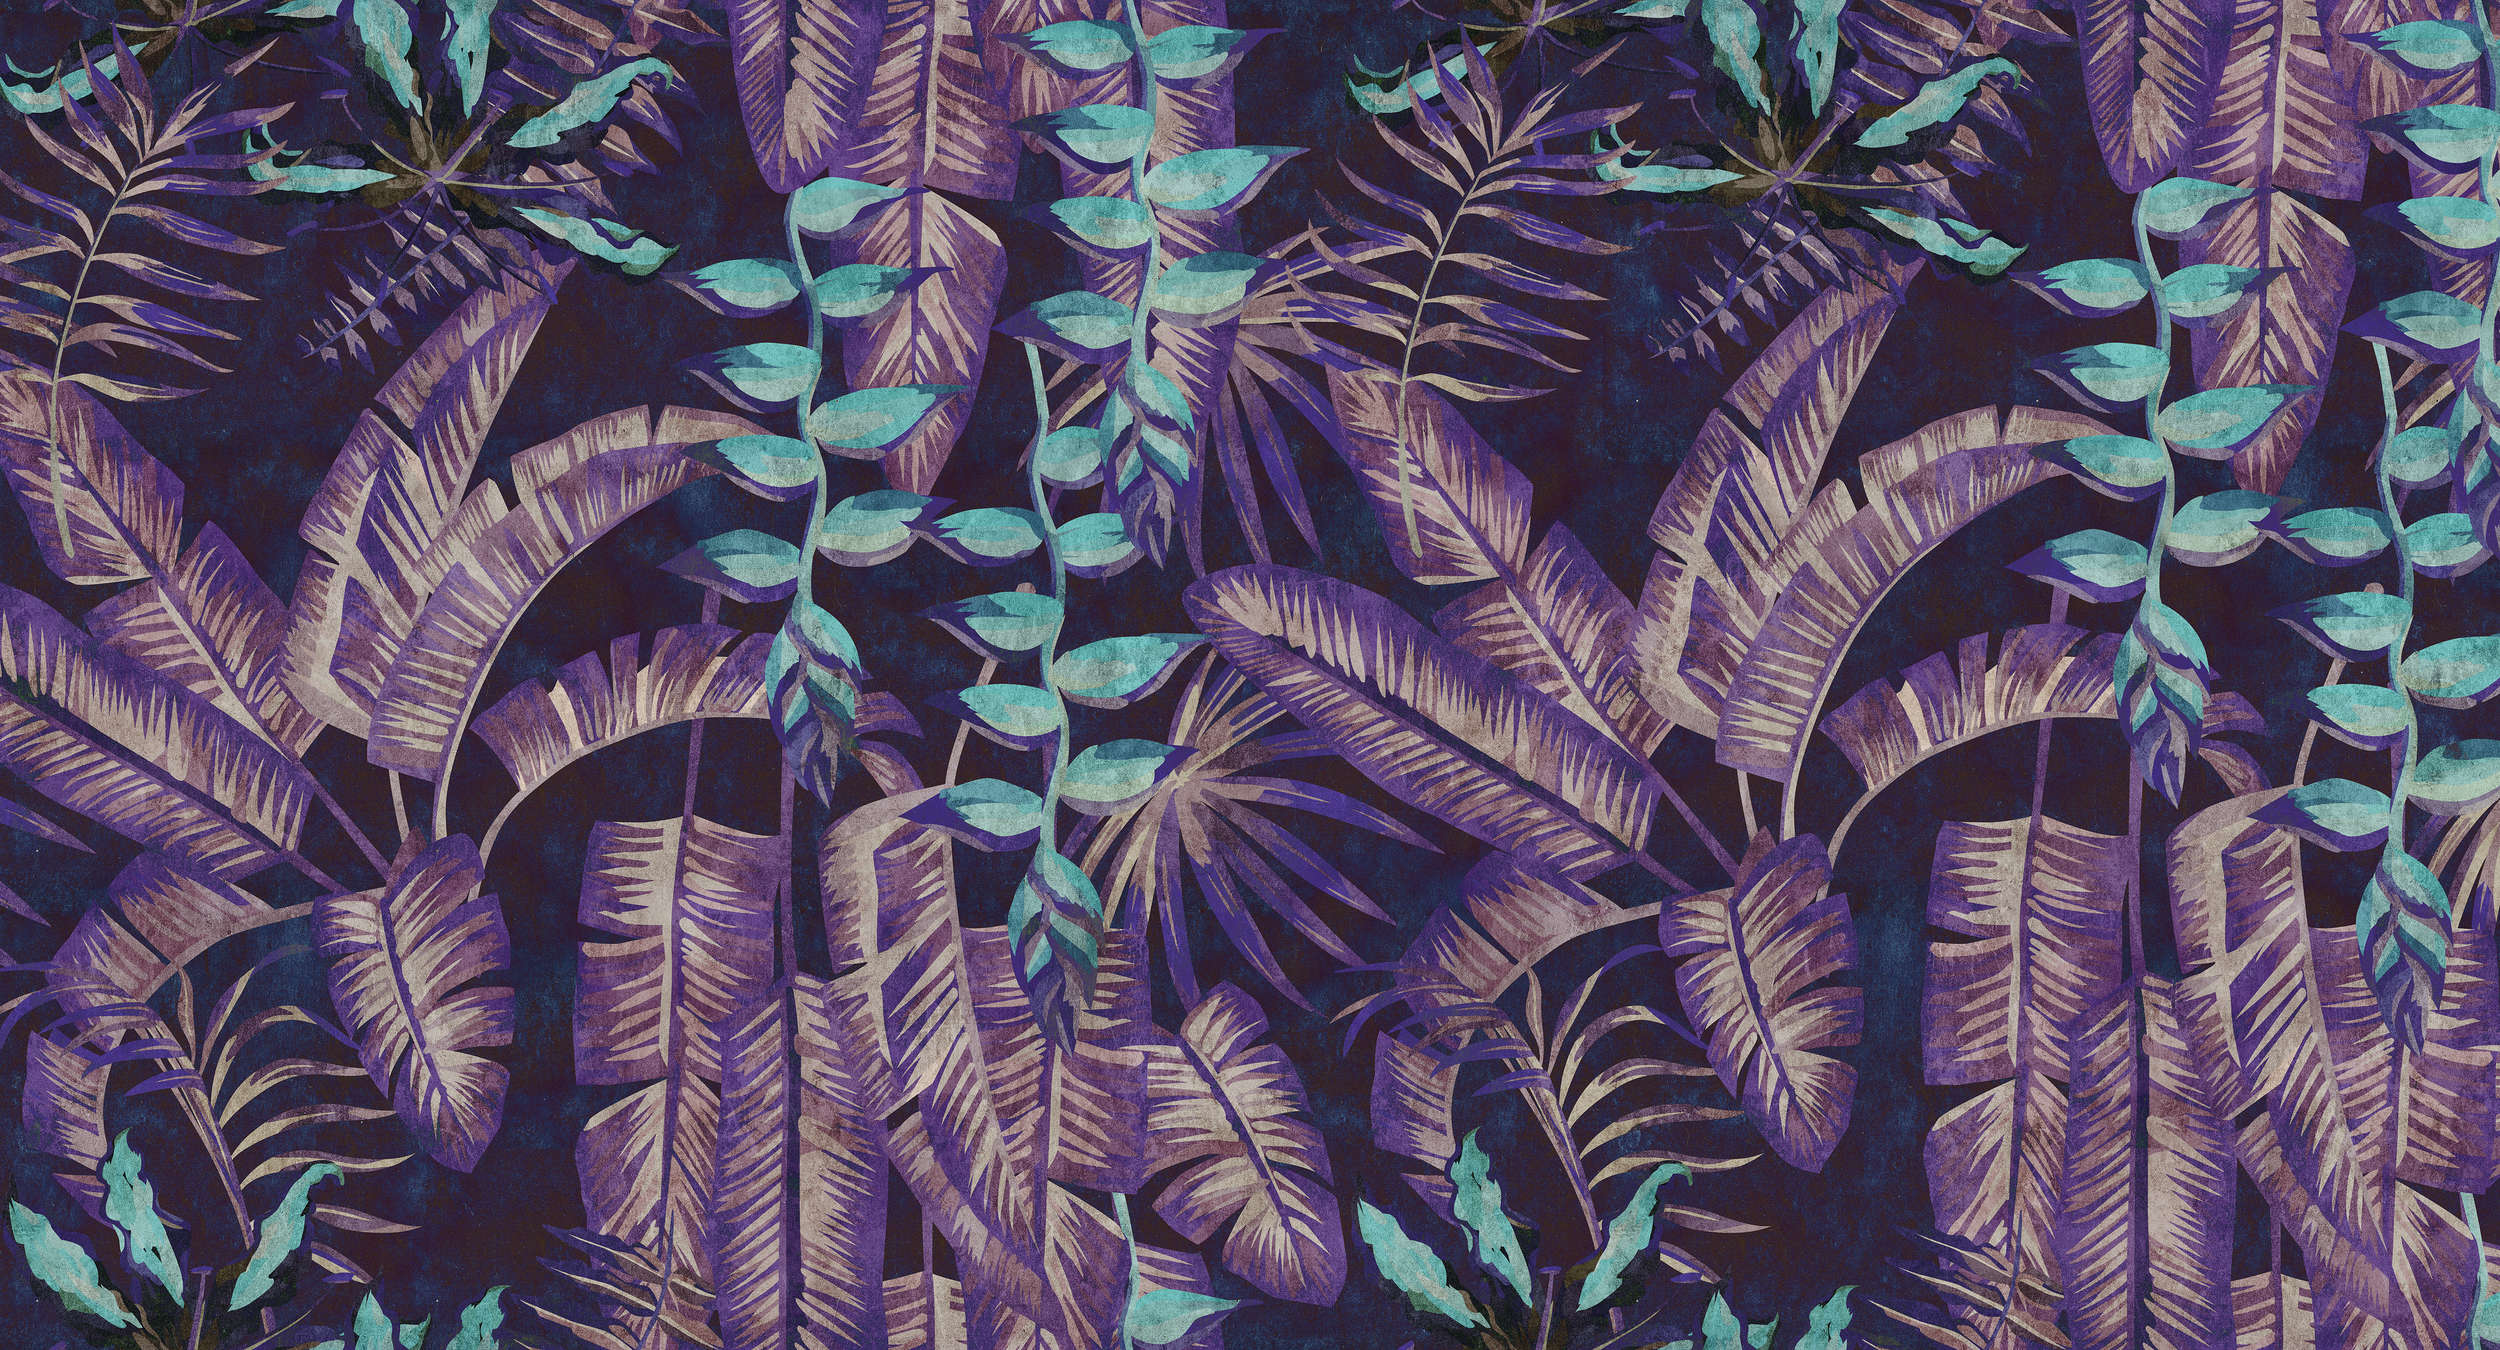             Tropicana 6 - Papier peint numérique sur buvard structure avec motif jungle - turquoise, violet | Premium intissé lisse
        